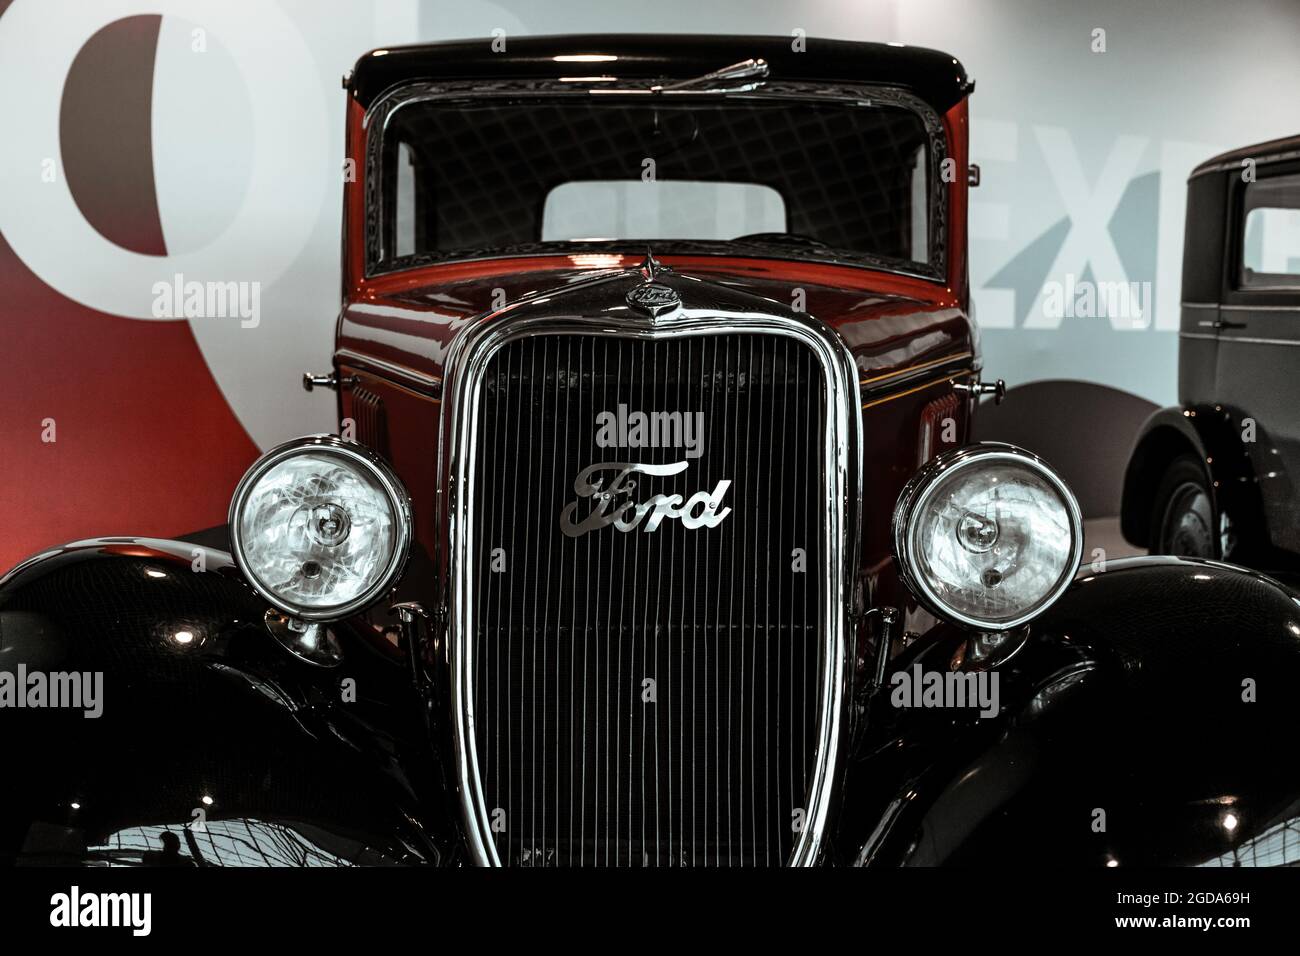 4 juin 2019, Moscou, Russie: Vue avant de la voiture américaine Ford modèle y 1933. Voitures rétro classiques des années 1930. Banque D'Images